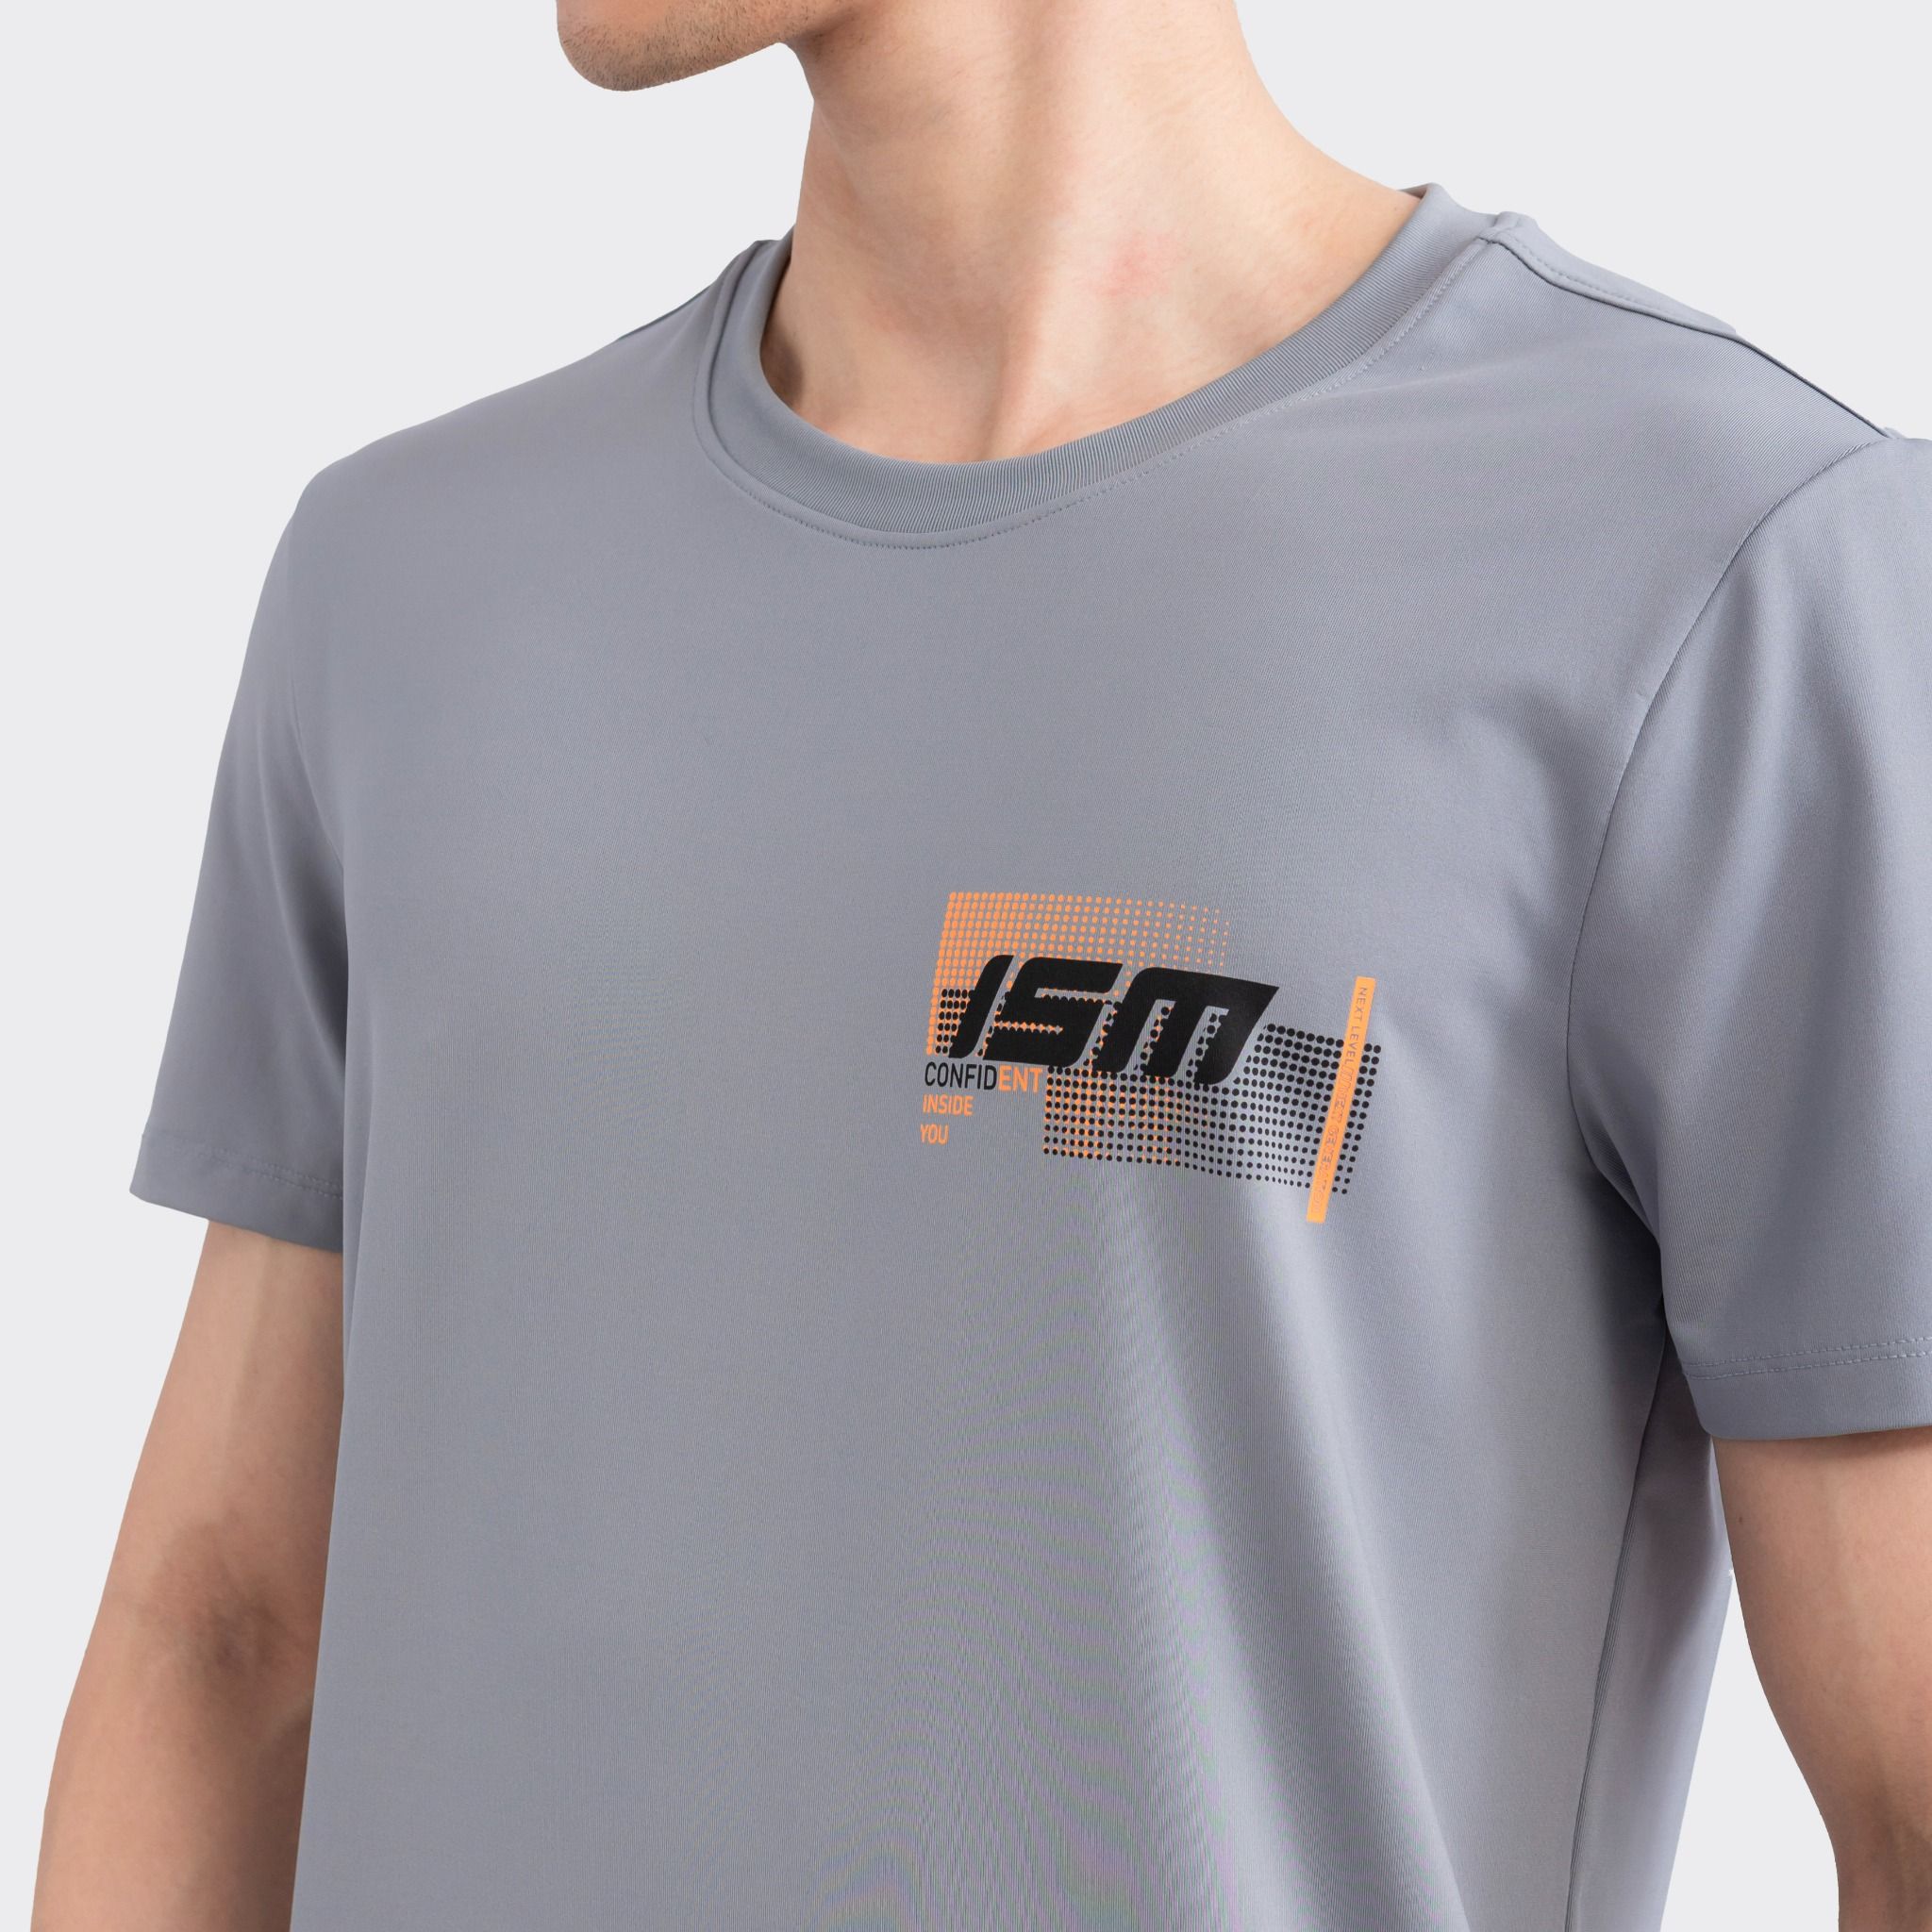  Áo T-shirt nam ngắn tay Insidemen ITS008S3 